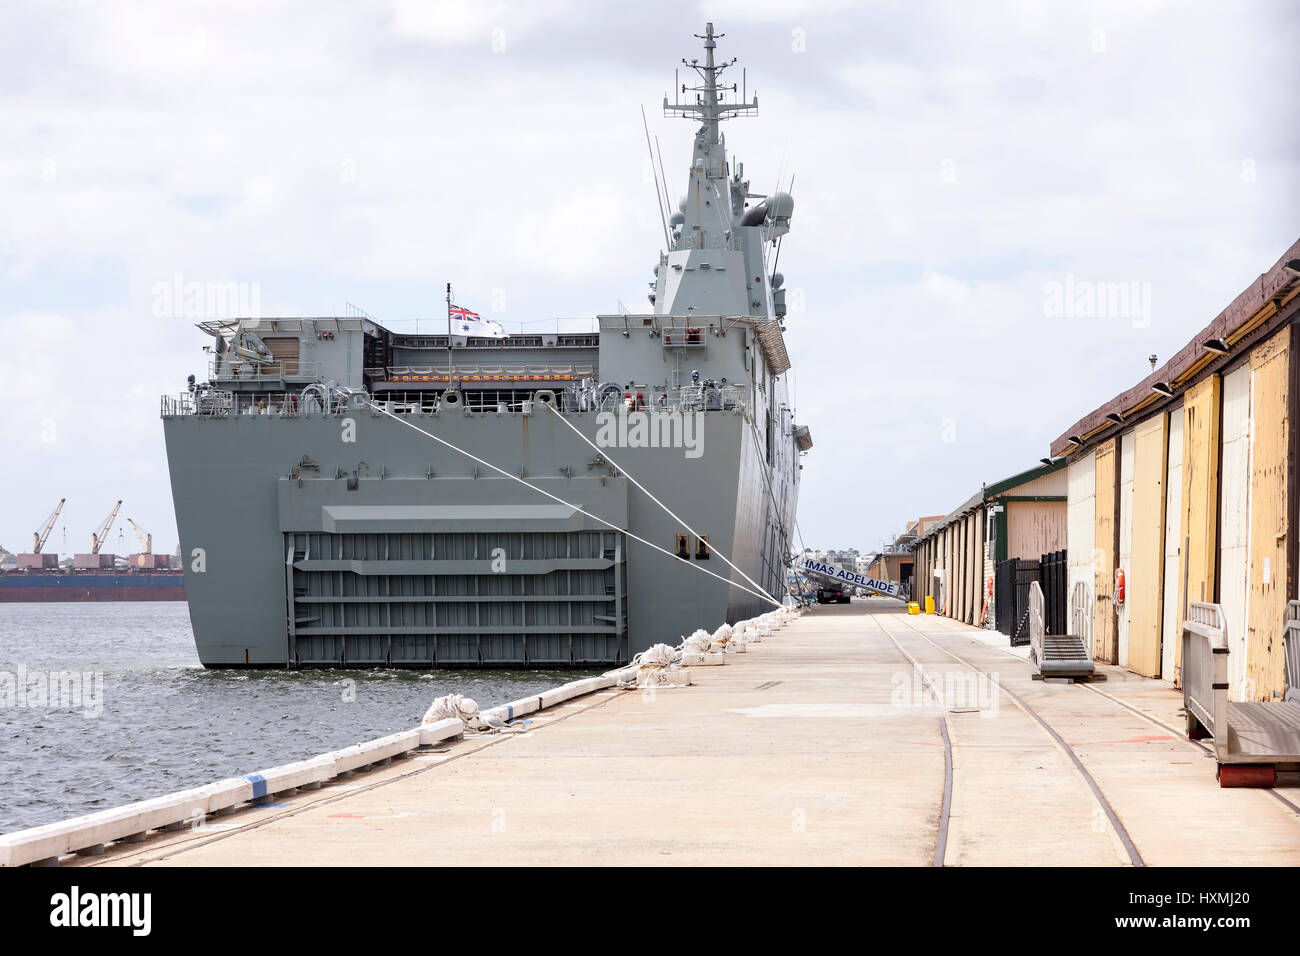 Fremantle en Australie occidentale, le HMAS Adelaide, porte-hélicoptères d'assaut amphibie/, un navire de classe Canberra amarré à quai. Banque D'Images